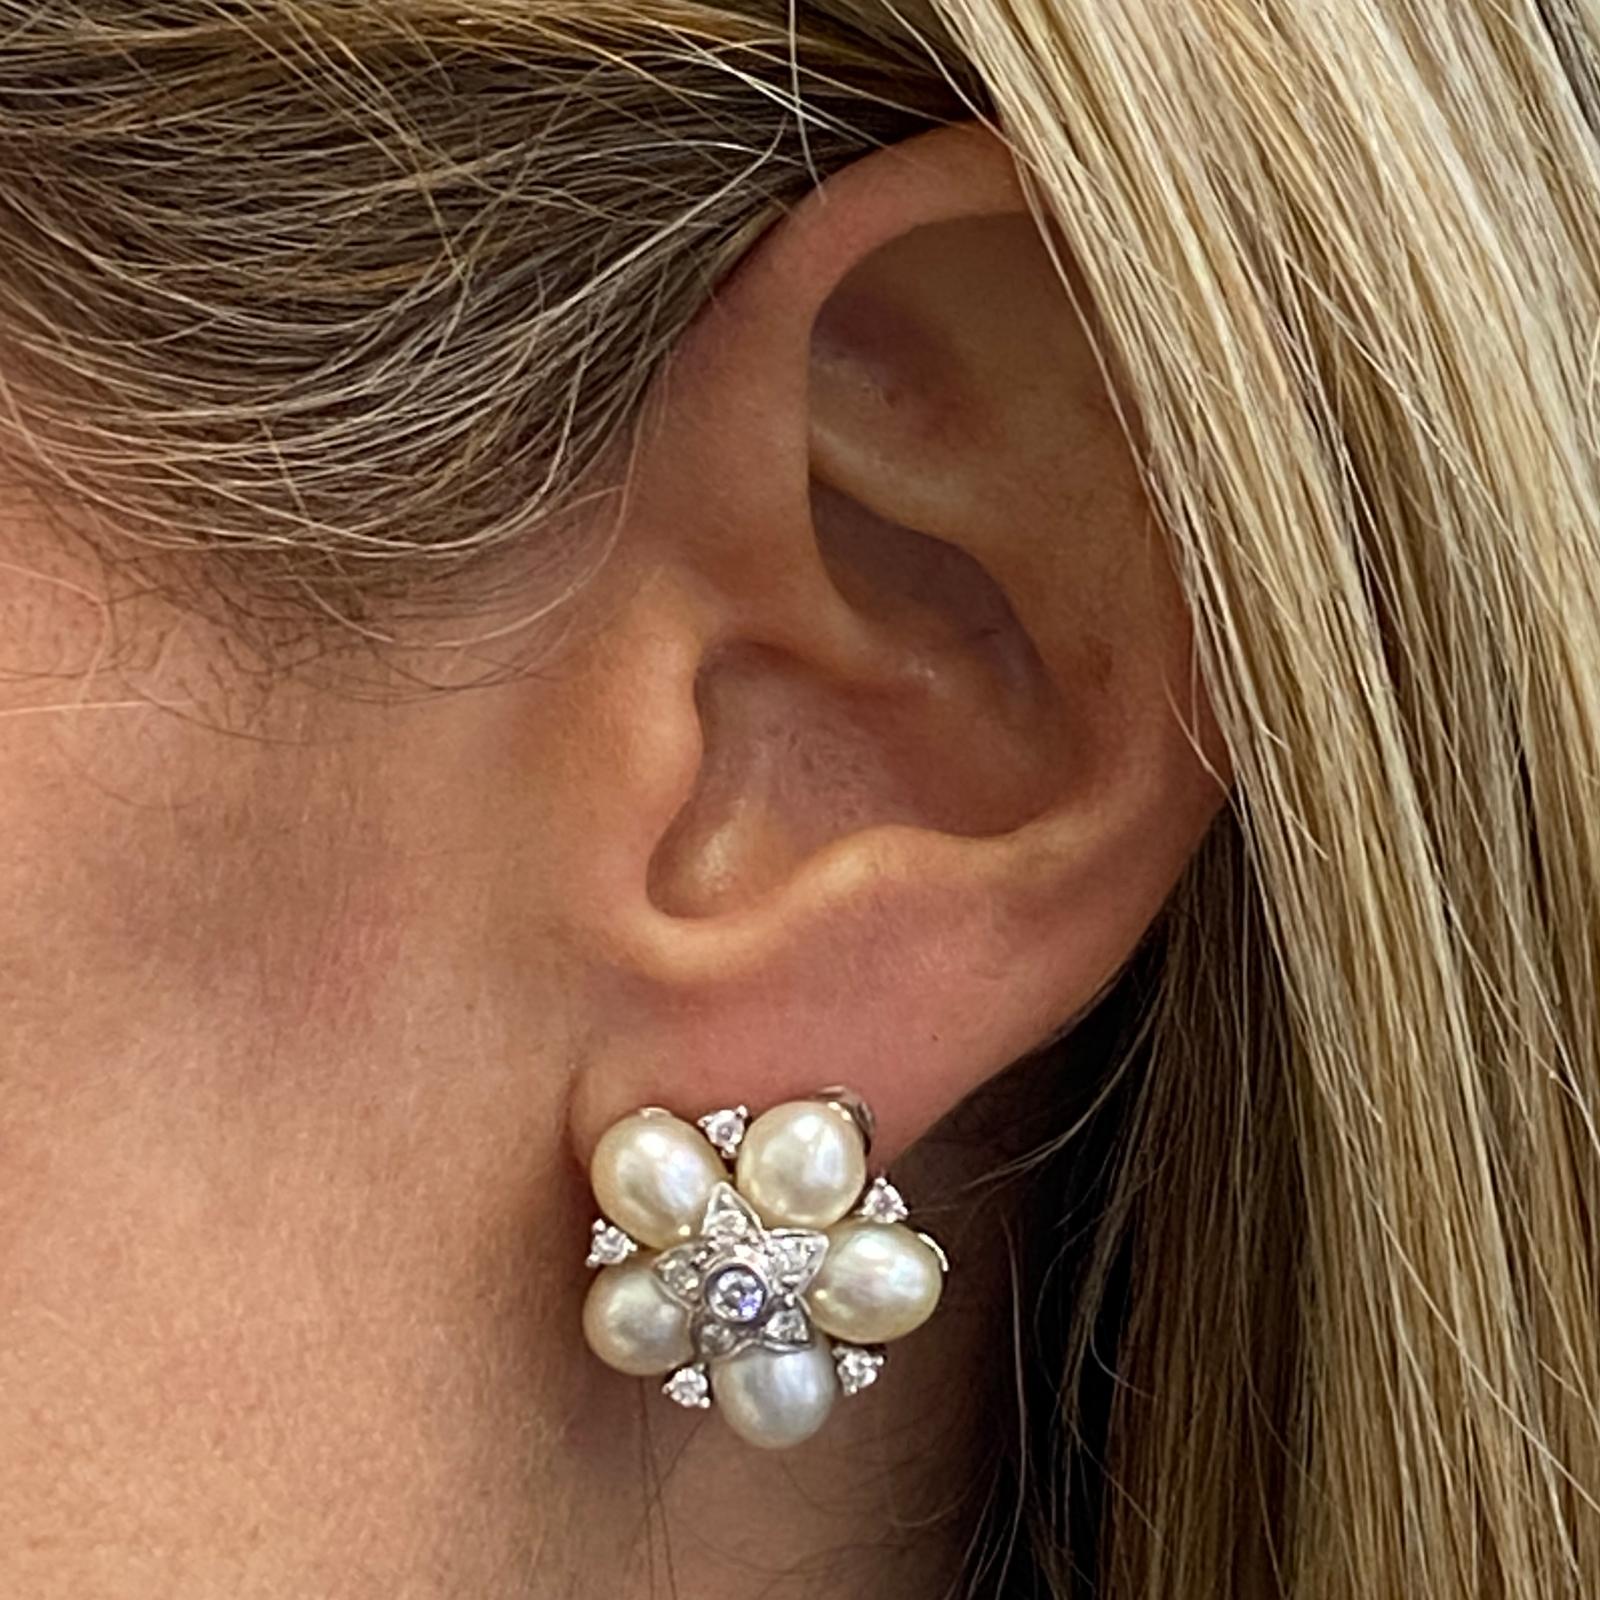 Diamant-Perlen-Ohrringe aus 18 Karat Weißgold. Die Ohrringe sind mit runden Diamanten im Brillantschliff mit einem Gesamtgewicht von 0,50 Karat versehen, die in der Farbe G-H und der Reinheit VS eingestuft sind. Die Ohrringe sind auch mit 10 weißen